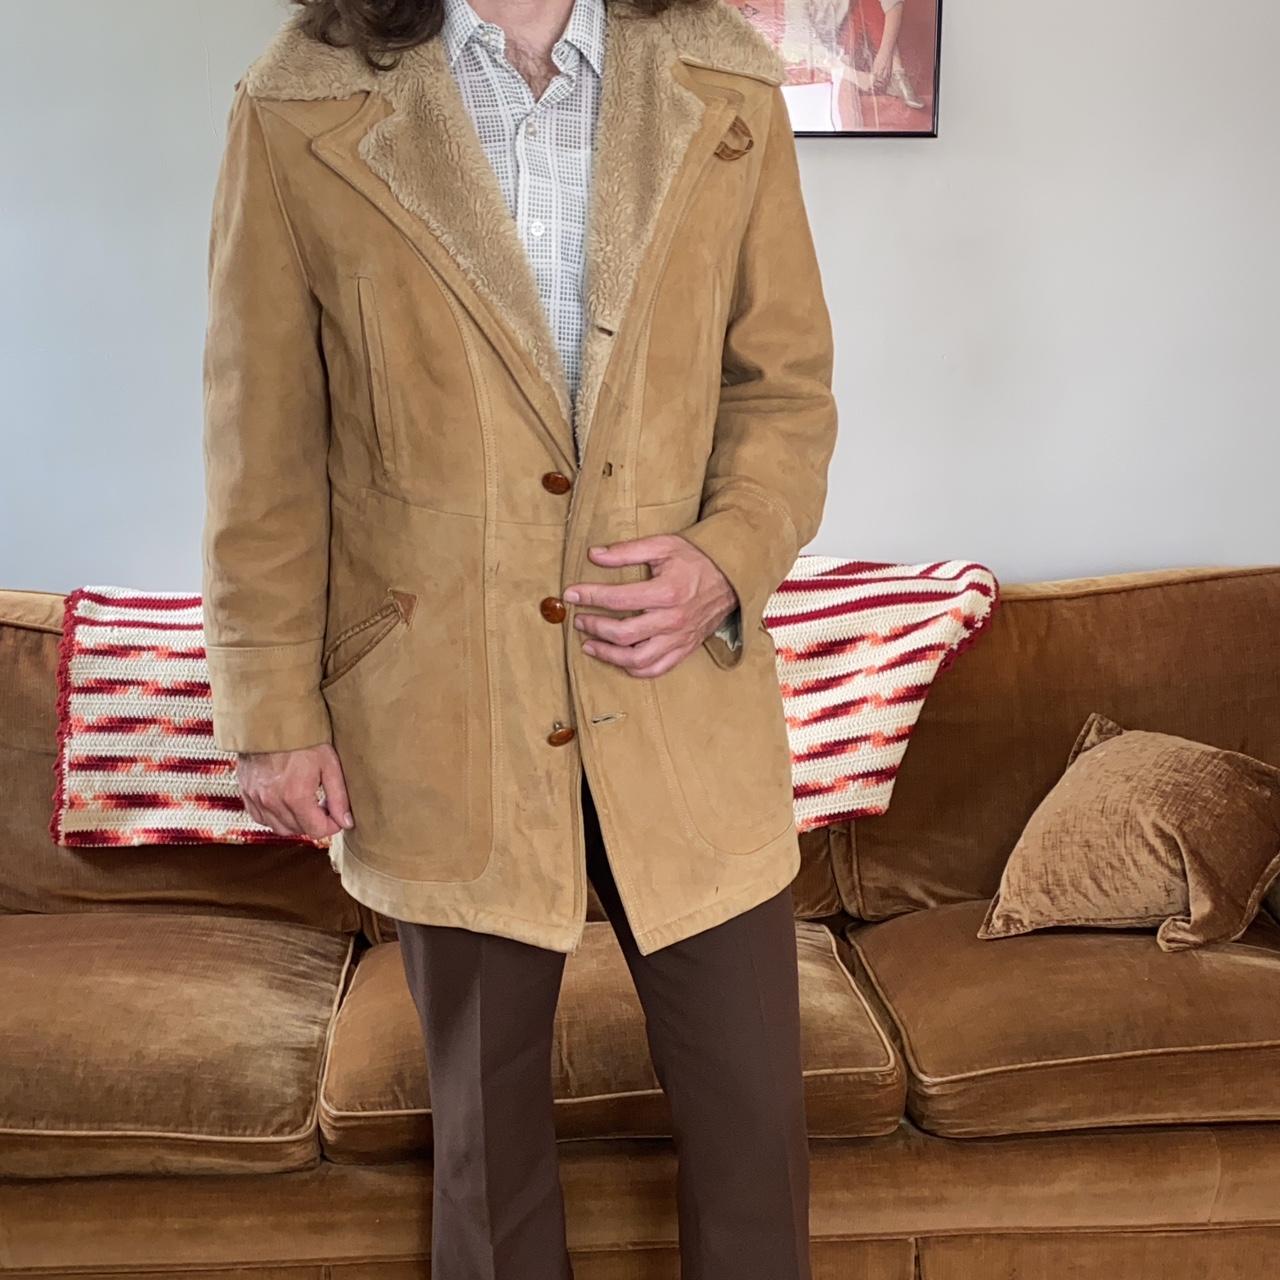 1970's McGregor VINTAGE coat 🌊 Coat Size 44 (large)... - Depop